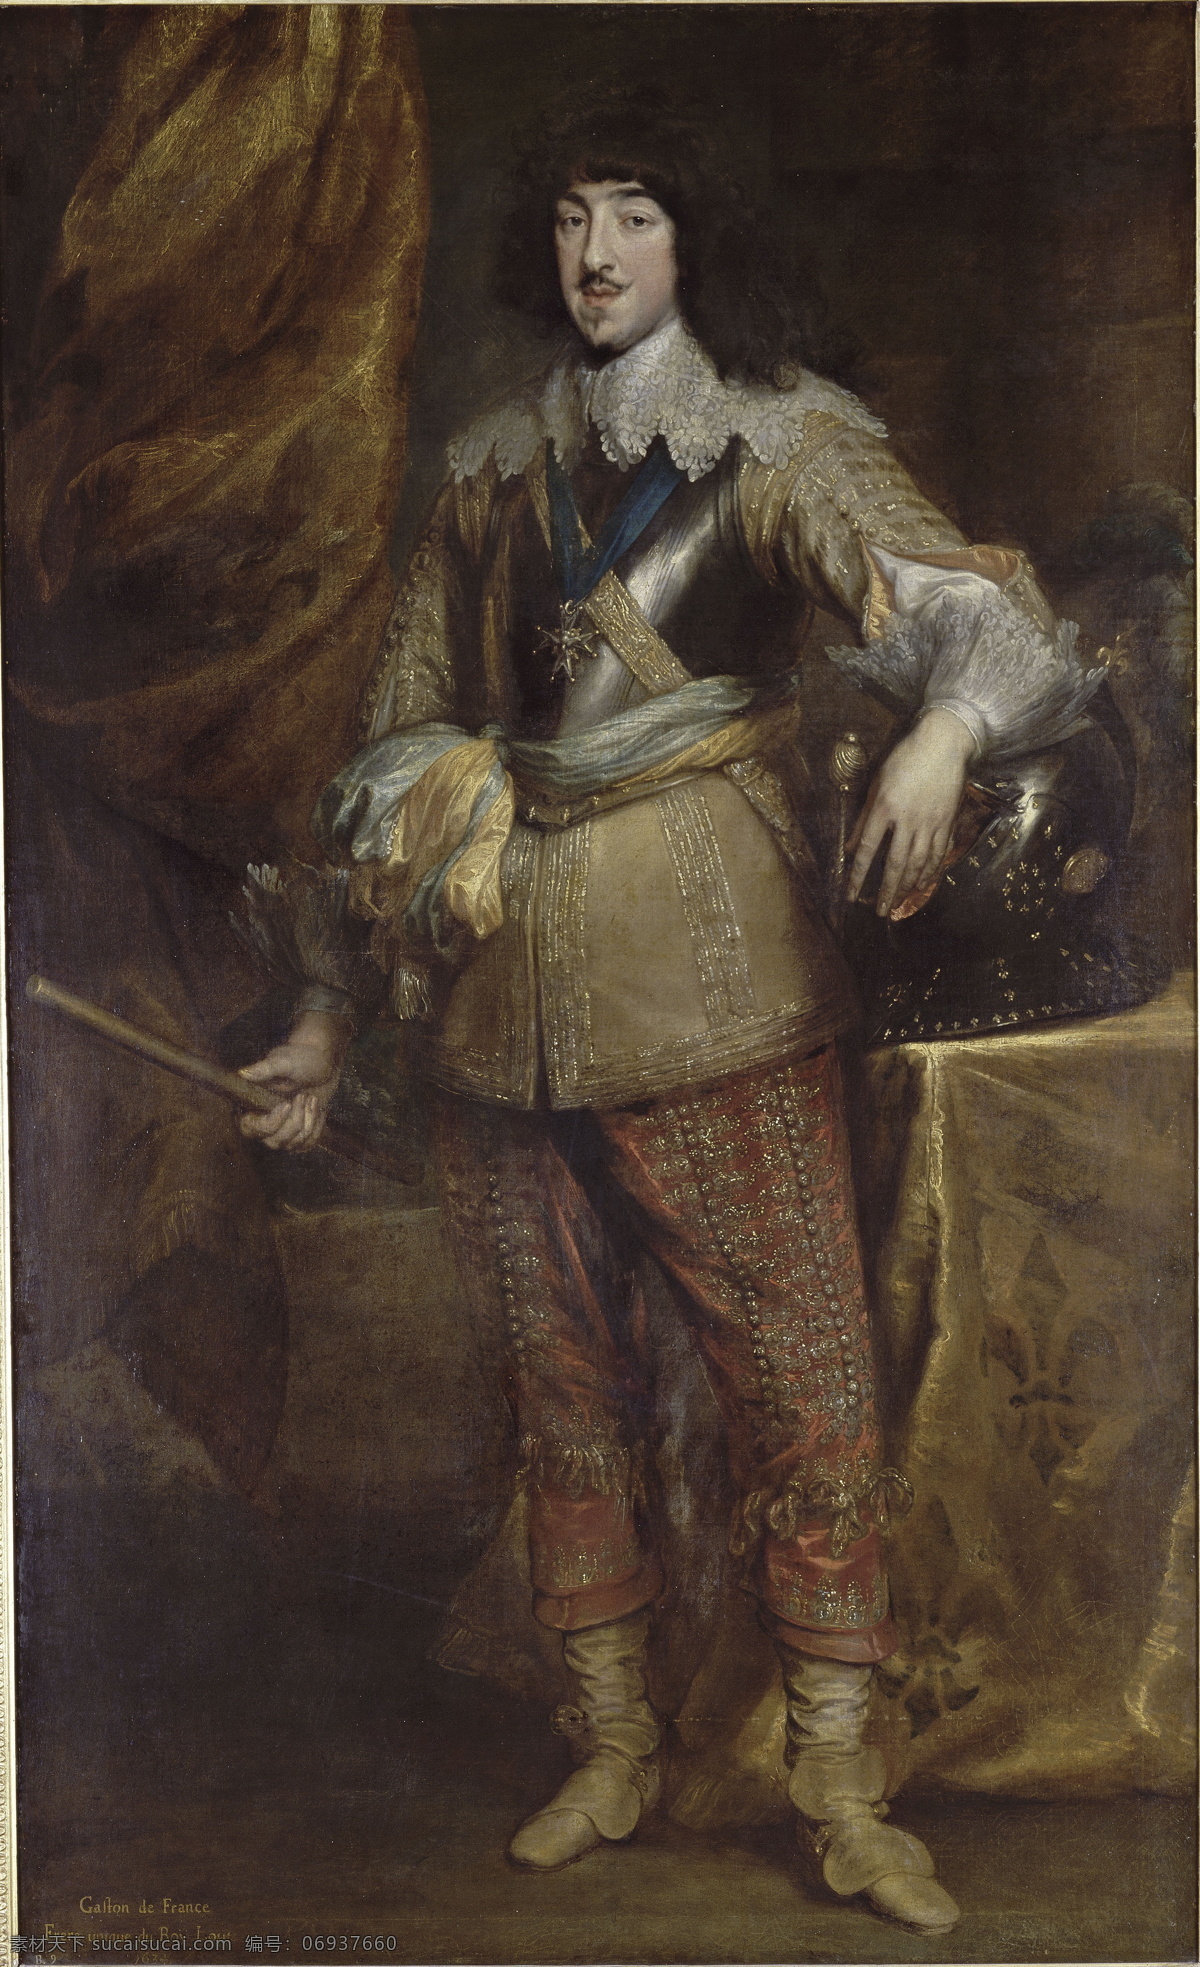 绘画书法 文化艺术 油画 新奥尔良 公爵 菲利普 法国王子 亨利四世次子 路易十三御弟 玛丽 德梅 递 奇 太后 爱 偷觑王位 在1634年 巴洛克 时代 家居装饰素材